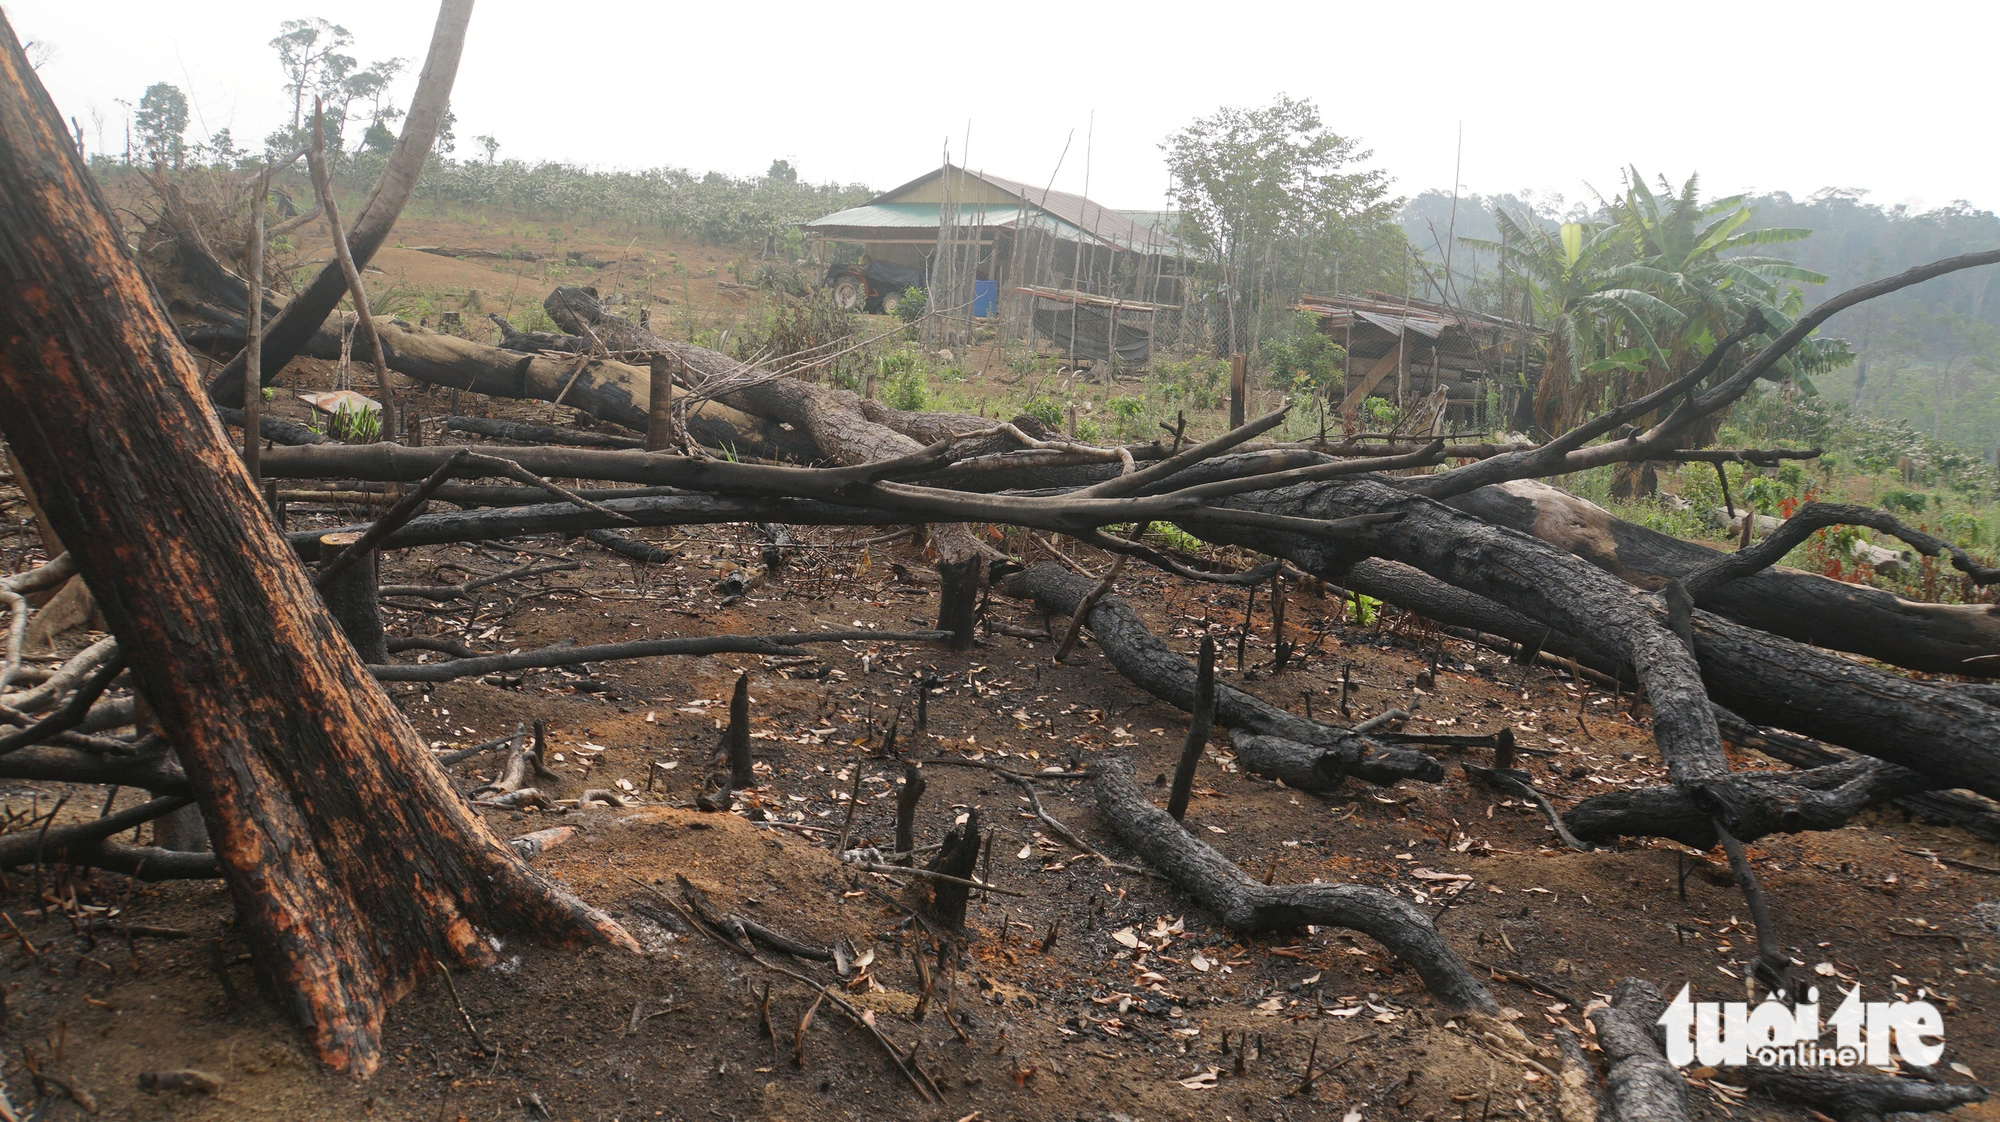 Hàng ngàn hecta rừng bị phá, hàng trăm căn nhà trái phép trên đất lâm trường nhưng Công ty Lâm nghiệp Nam Tây Nguyên chưa xử lý dứt điểm - Ảnh: ĐỨC LẬP